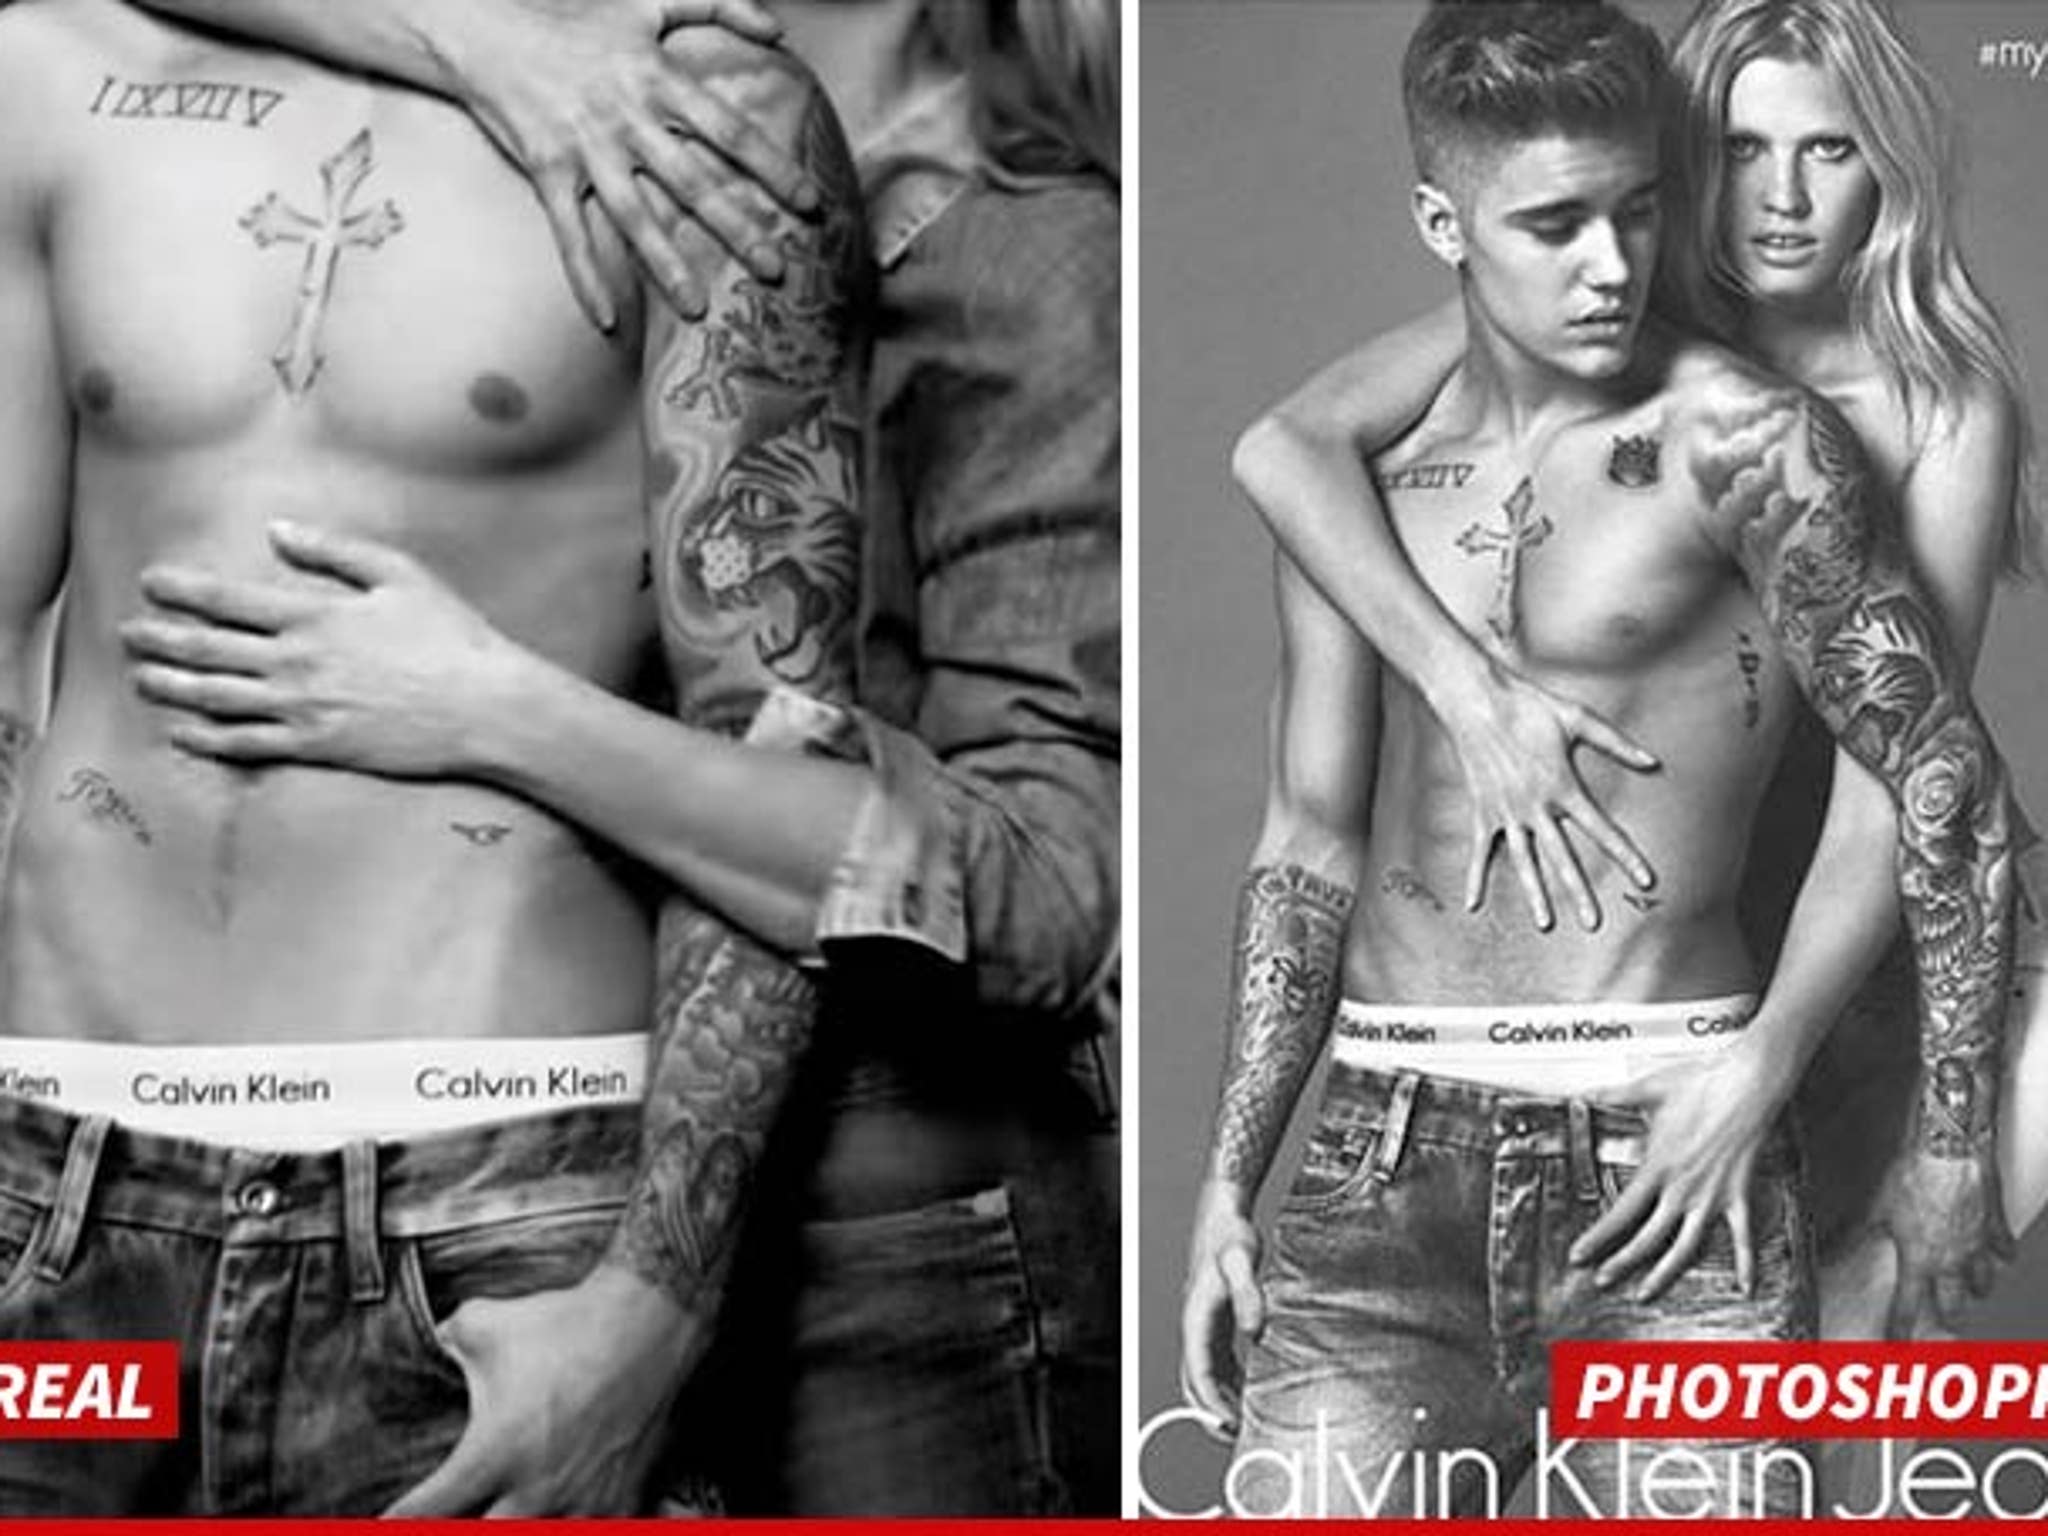 Justin Bieber -- Calvin Klein's Happy Trail of LIES!!!